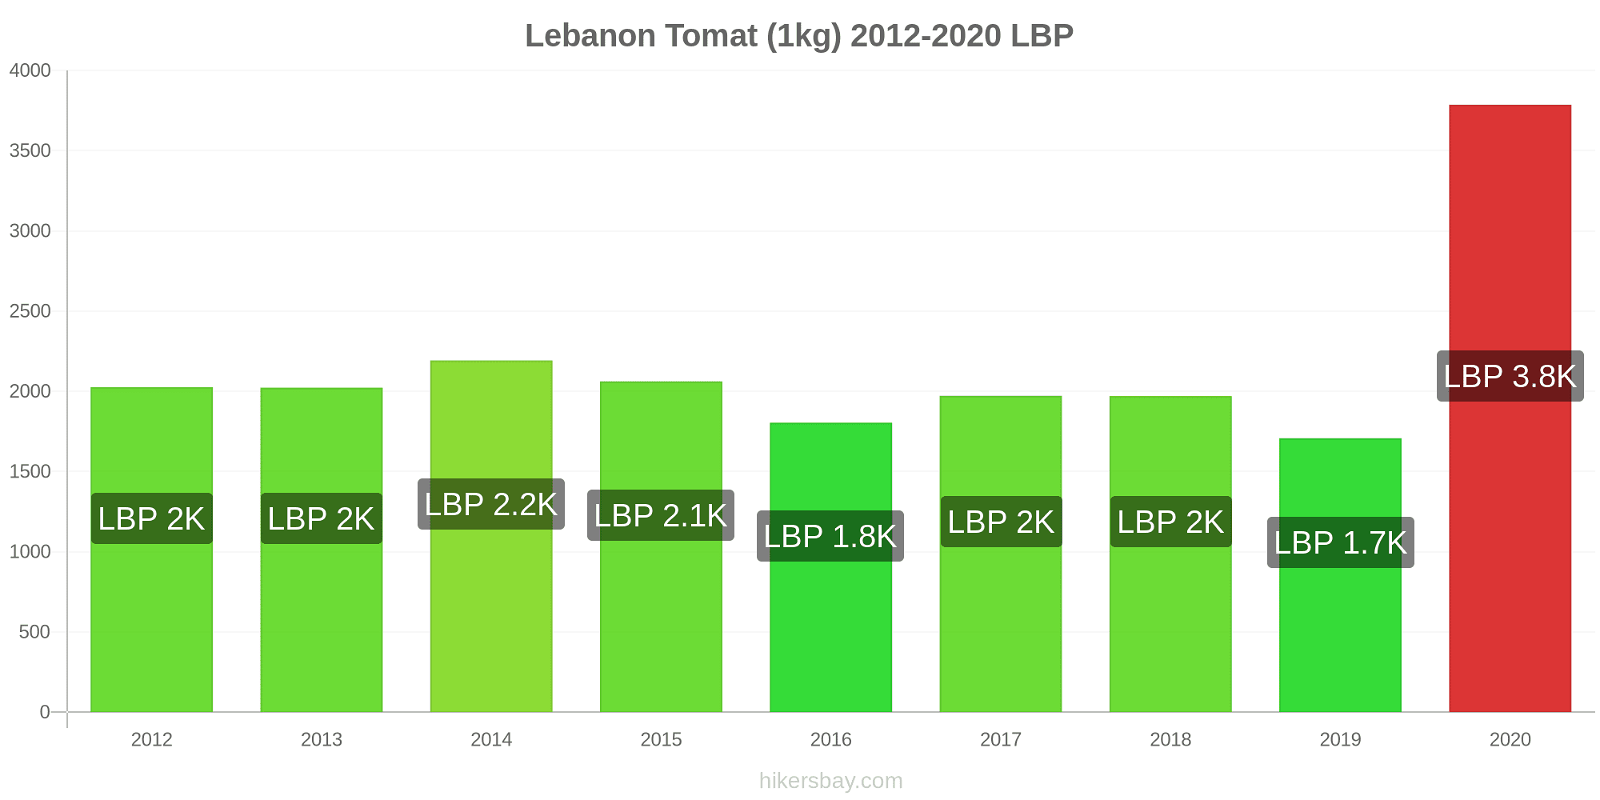 Lebanon perubahan harga Tomat (1kg) hikersbay.com